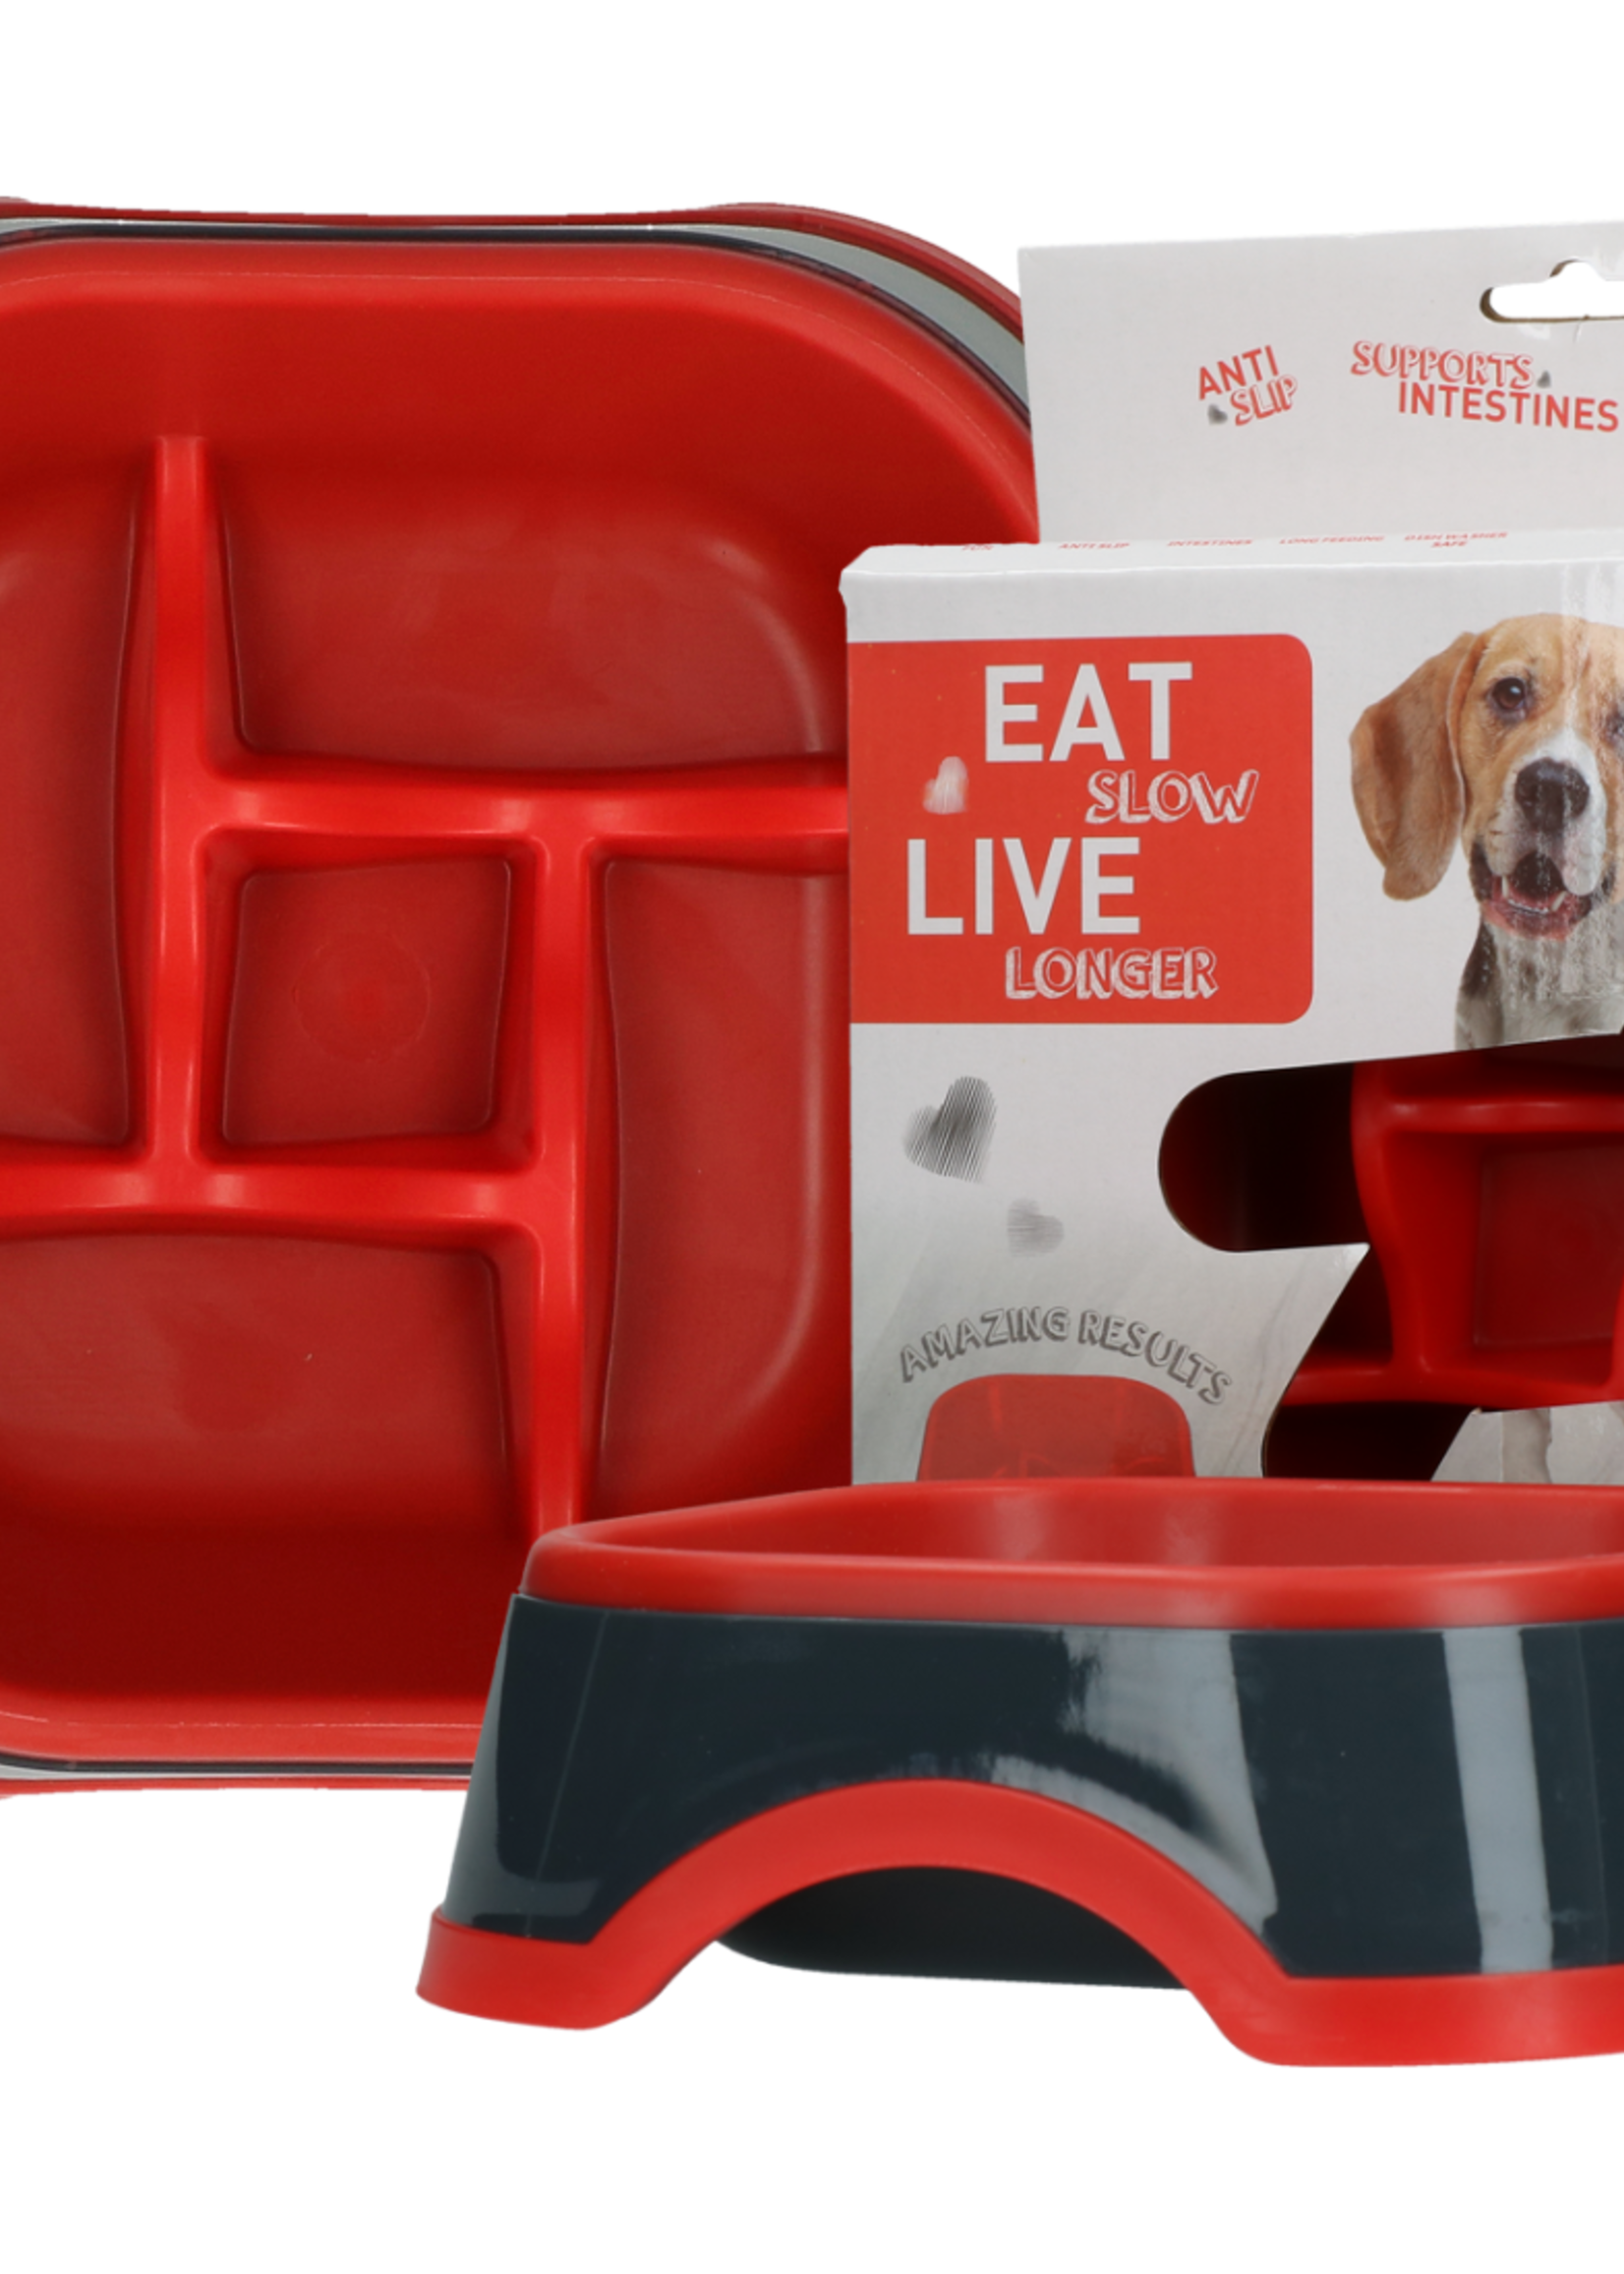 Eat Slow Live Longer Antischrok voerbak voor de hond!